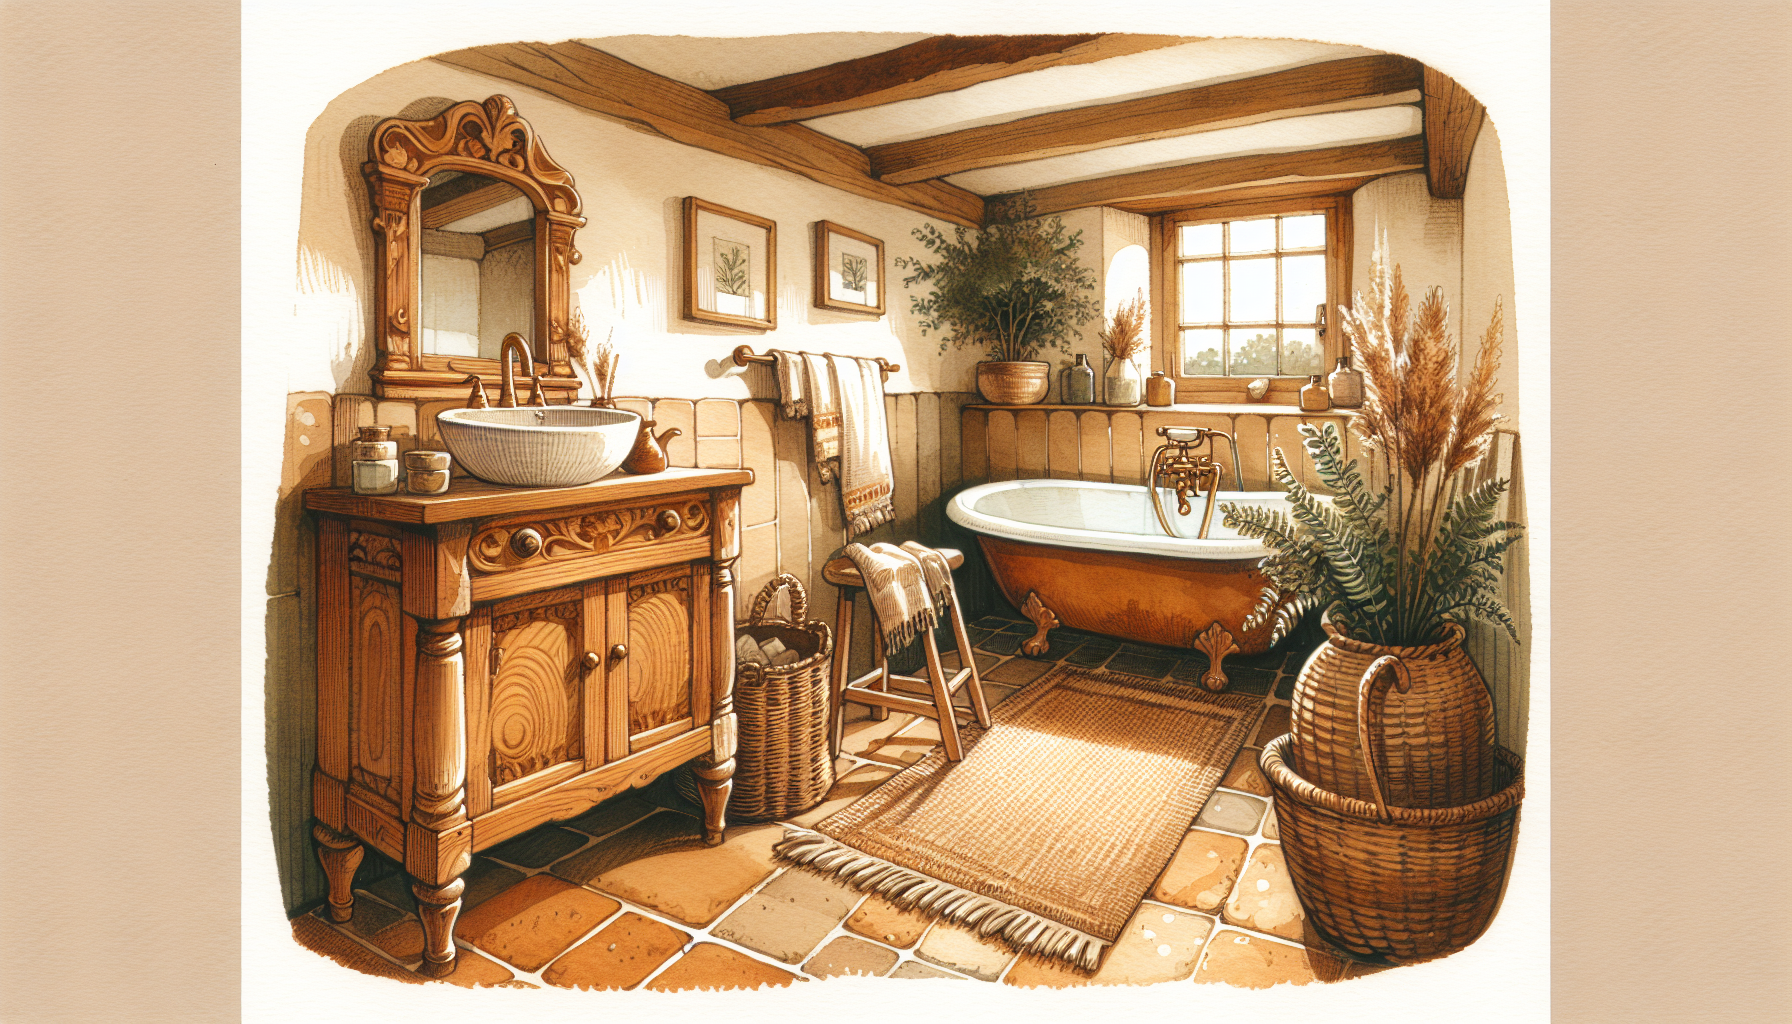 Gemütliches Badezimmer im Landhausstil mit natürlichen Materialien und warmen Farben